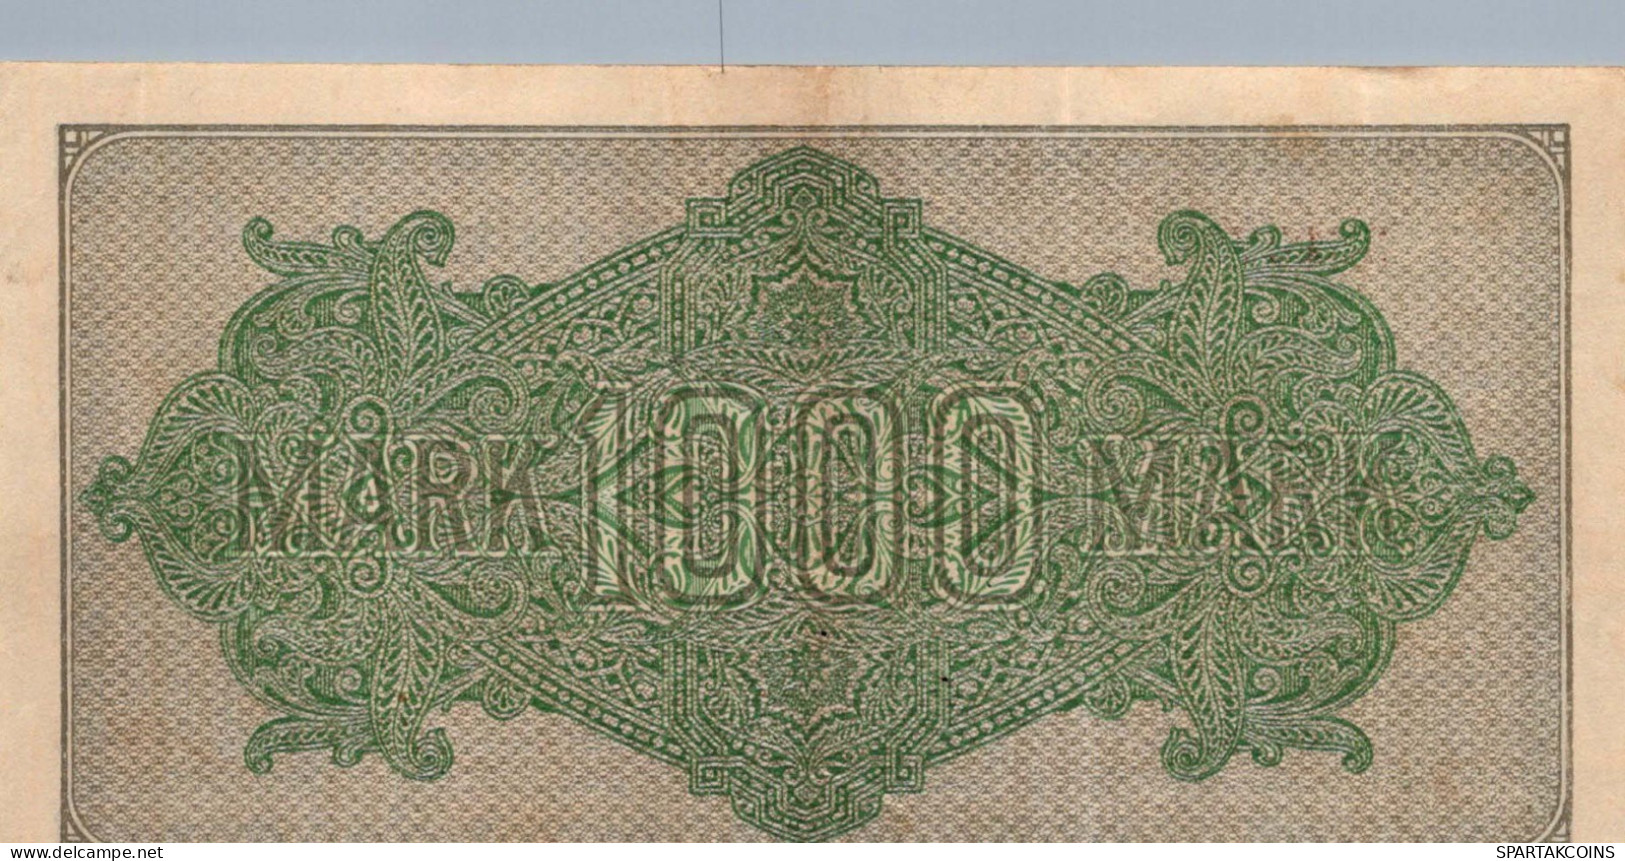 1000 MARK 1922 Stadt BERLIN DEUTSCHLAND Papiergeld Banknote #PL393 - [11] Local Banknote Issues